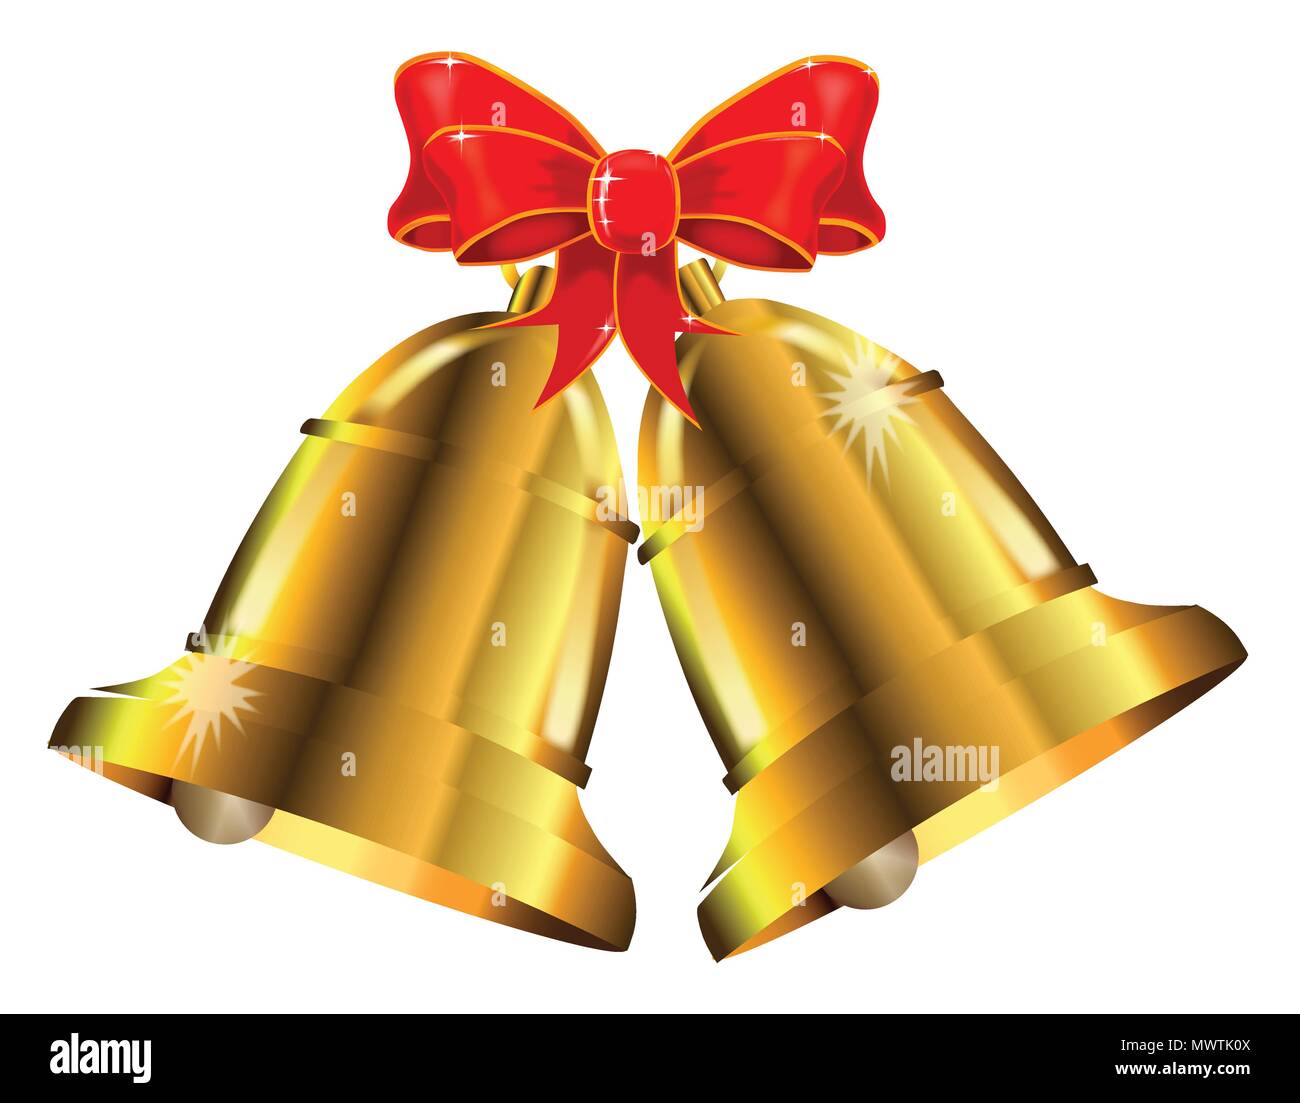 Ein paar Weihnachten goldene Glocken zusammen mit einer roten Schleife über einem weißen Hintergrund gebunden Stock Vektor